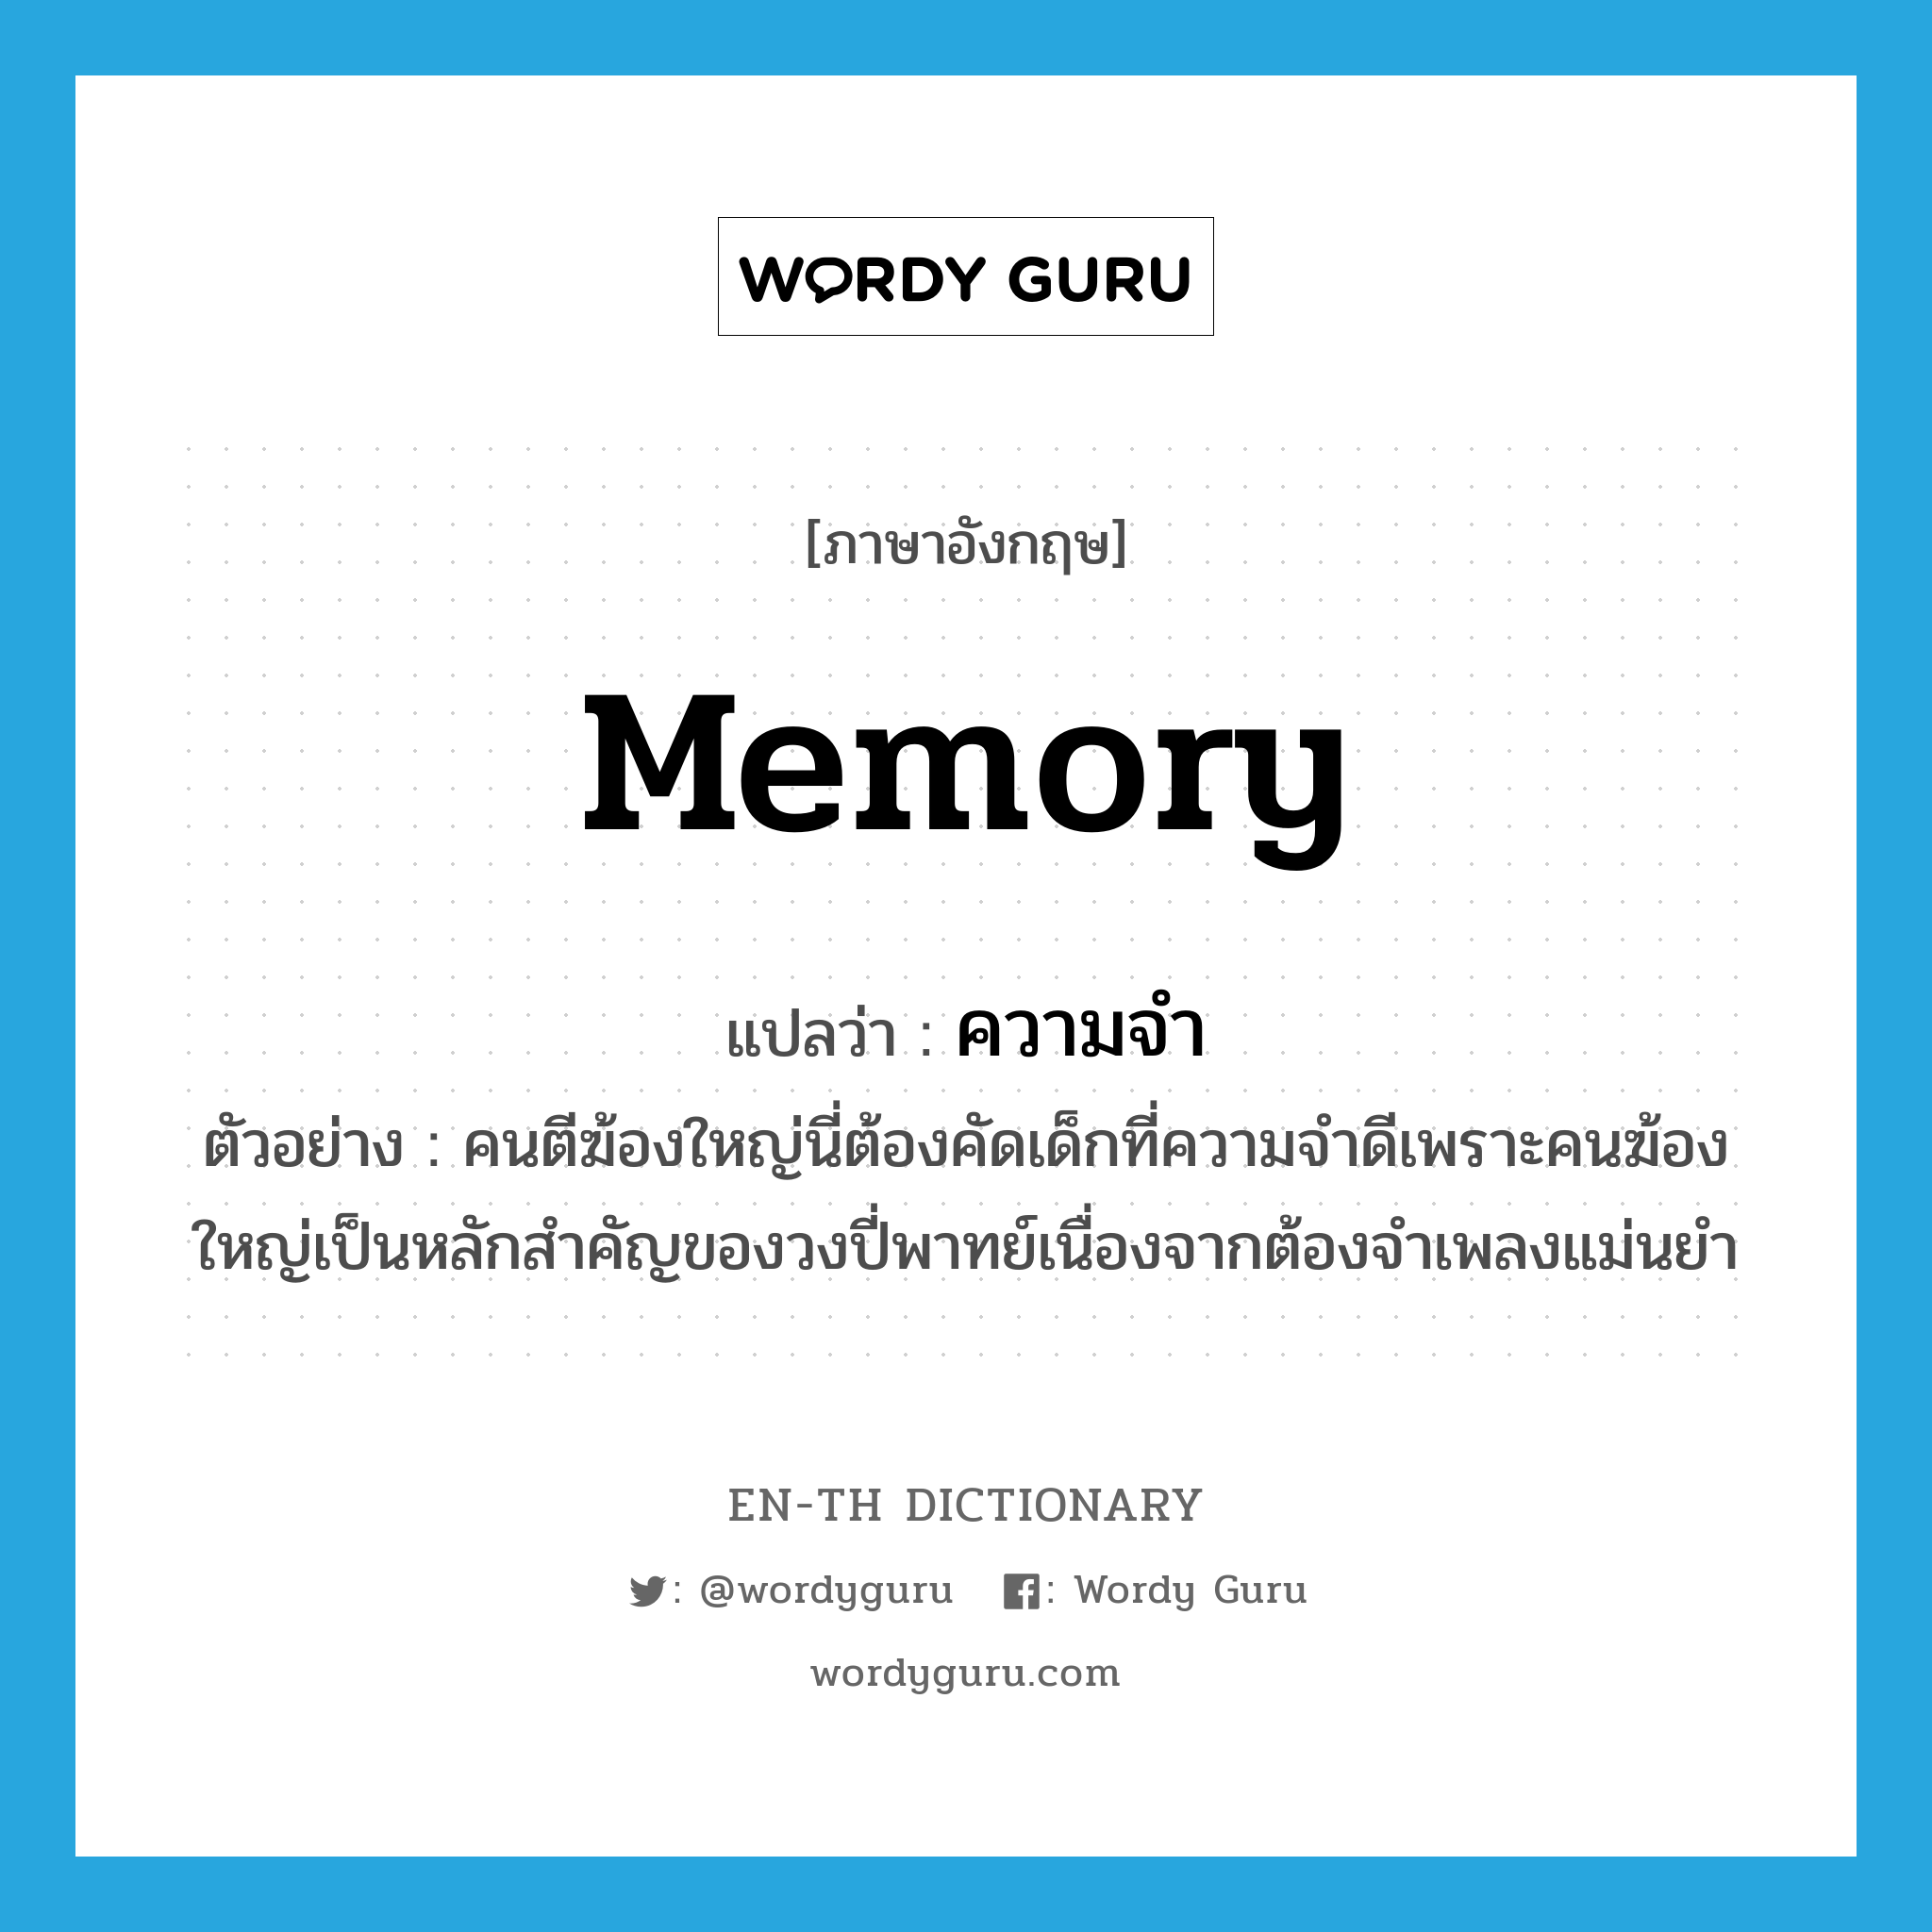 ความจำ ภาษาอังกฤษ?, คำศัพท์ภาษาอังกฤษ ความจำ แปลว่า memory ประเภท N ตัวอย่าง คนตีฆ้องใหญ่นี่ต้องคัดเด็กที่ความจำดีเพราะคนฆ้องใหญ่เป็นหลักสำคัญของวงปี่พาทย์เนื่องจากต้องจำเพลงแม่นยำ หมวด N